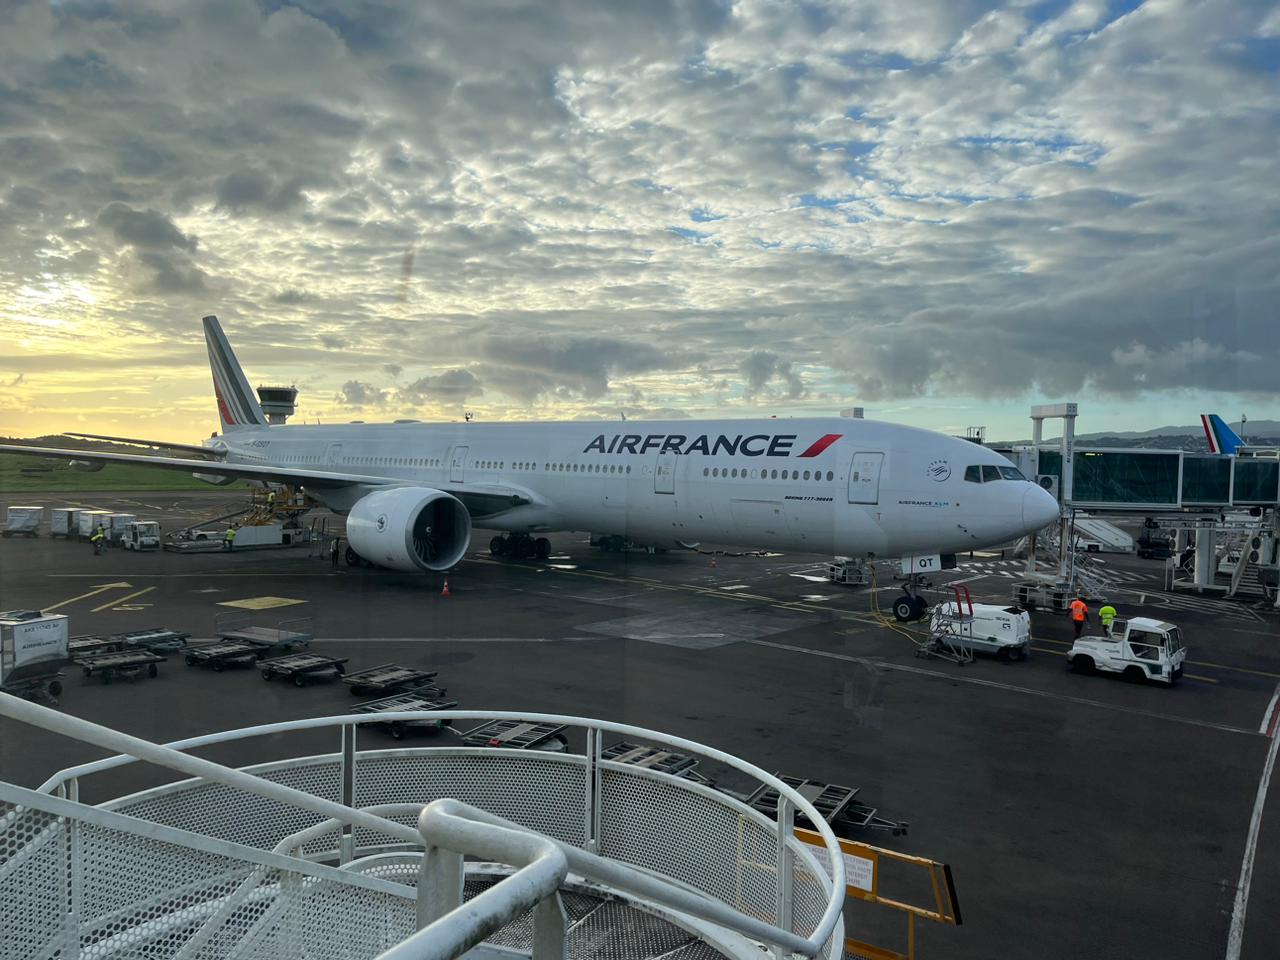     Air France adapte à nouveau son programme de vols sur le réseau régional Antilles-Guyane

